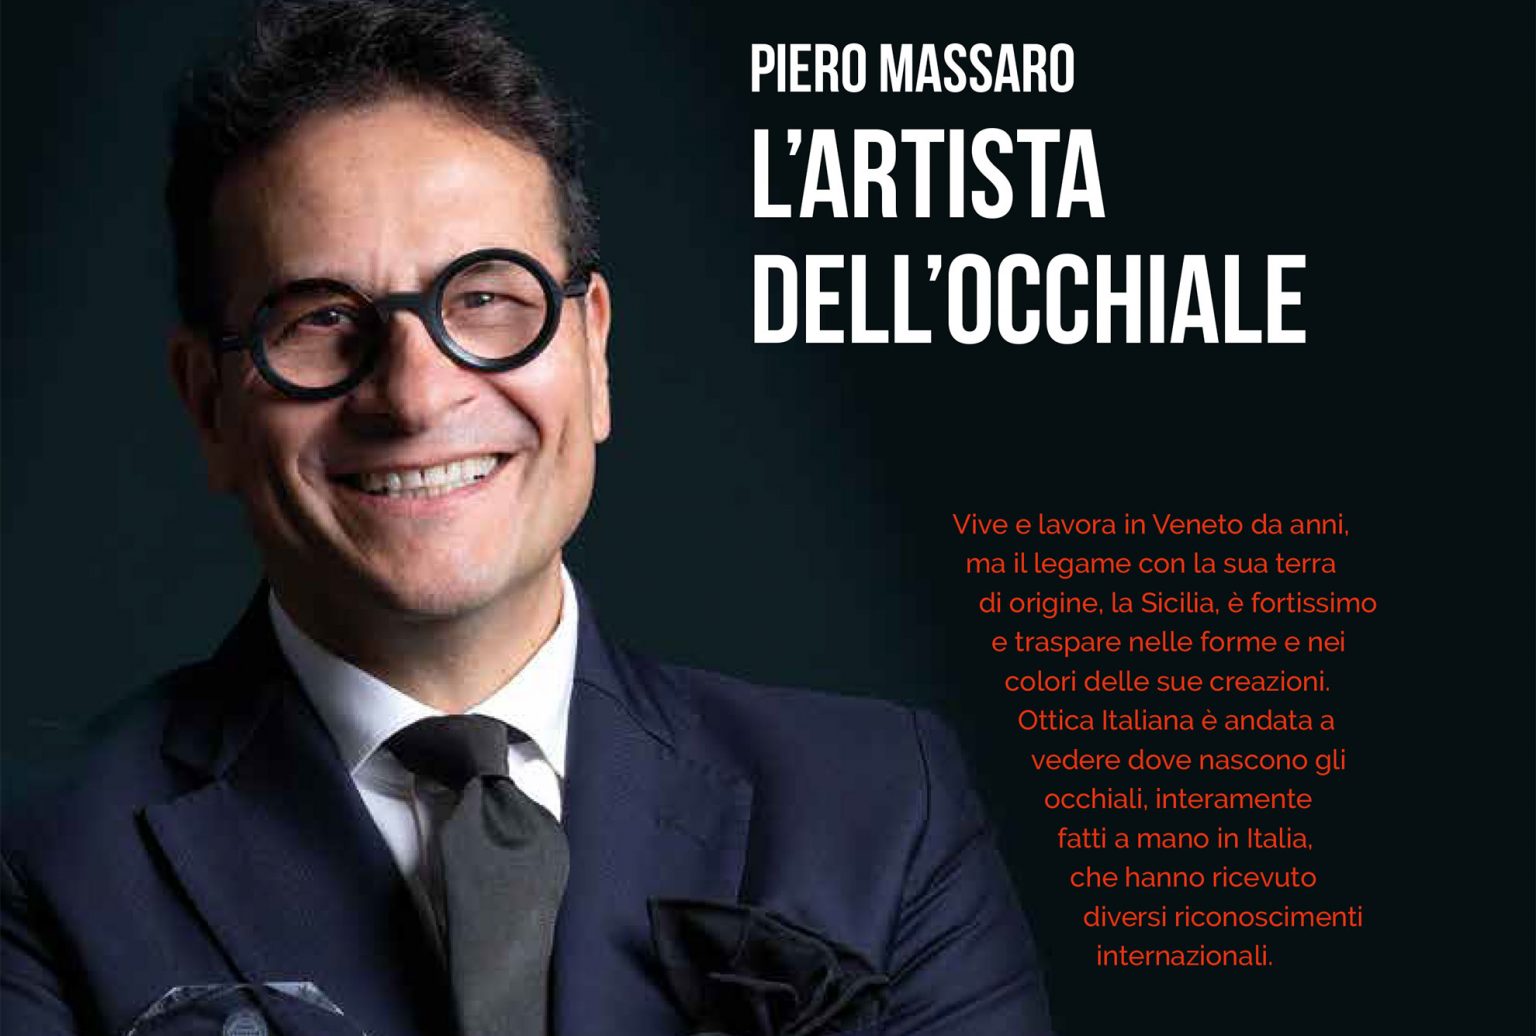 Ottica Italiana: Piero Massaro l’artista dell’occhiale – Piero Massaro